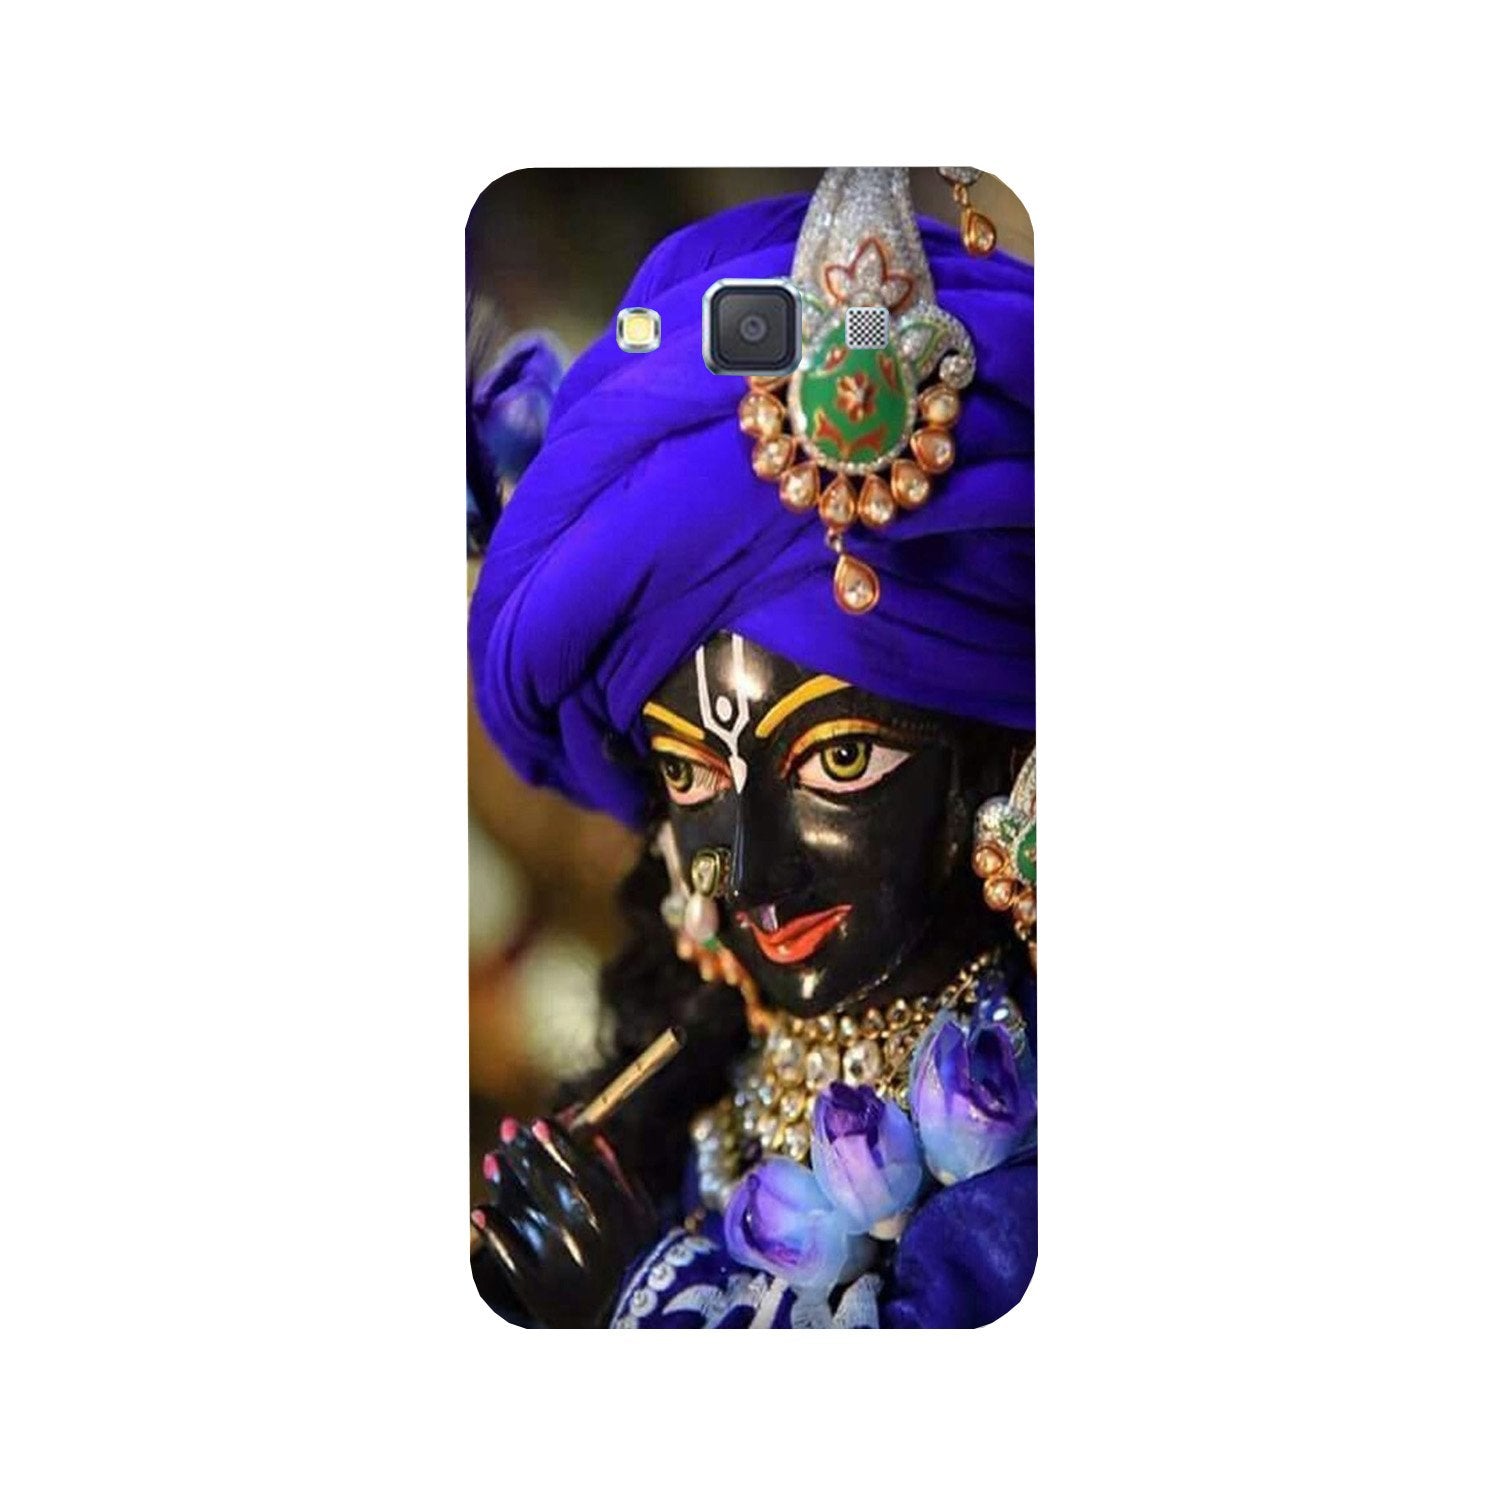 Lord Krishna4 Case for Galaxy J5 (2016)